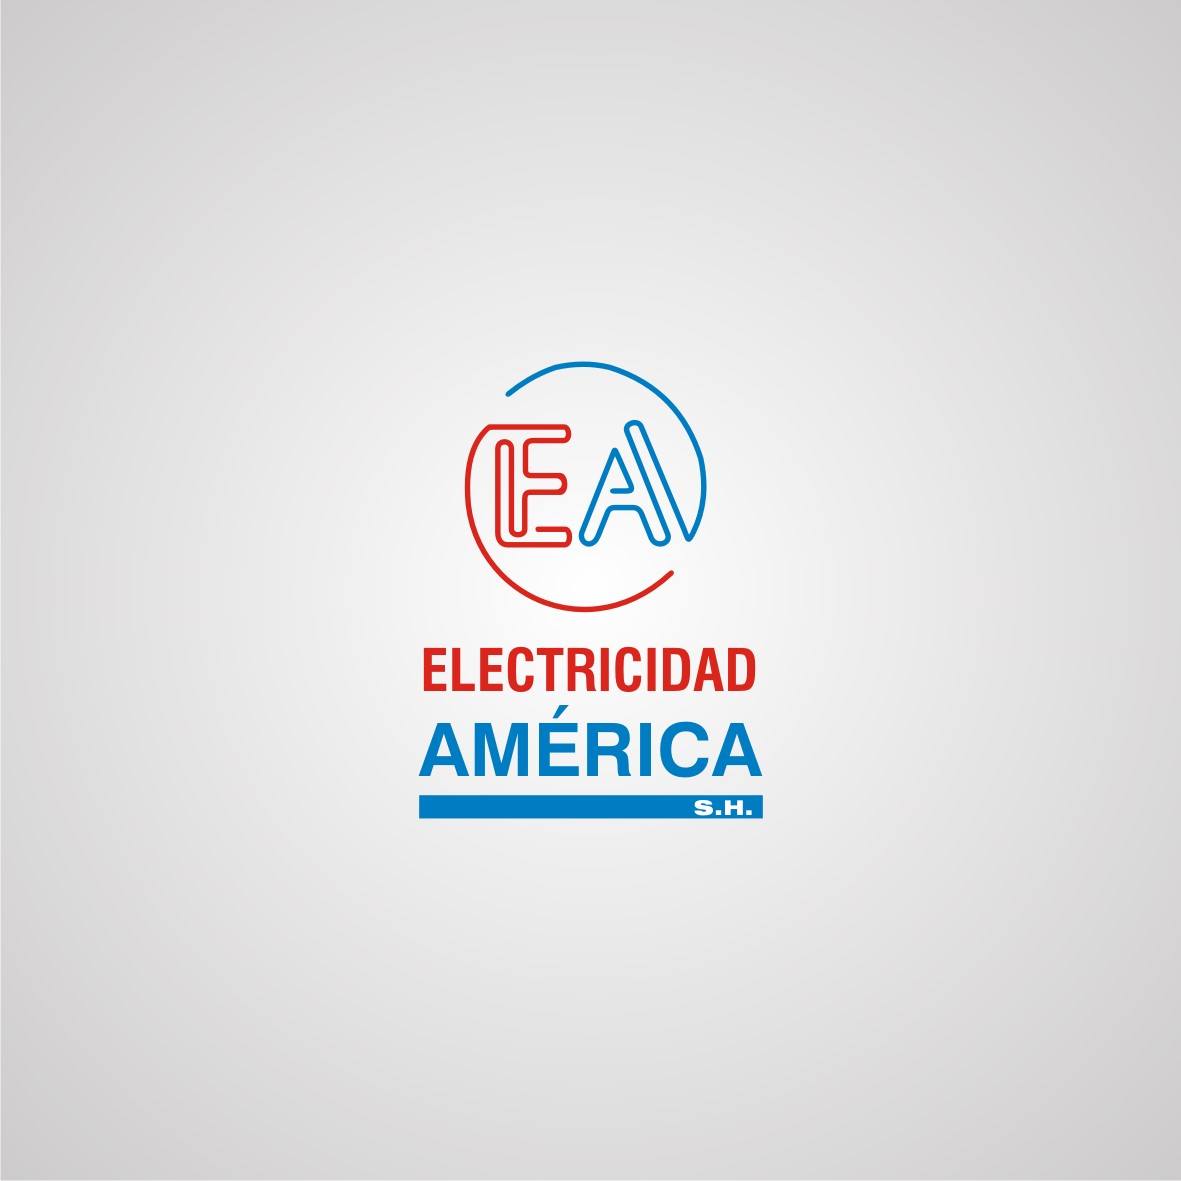 ELECTRICIDAD AMERICA